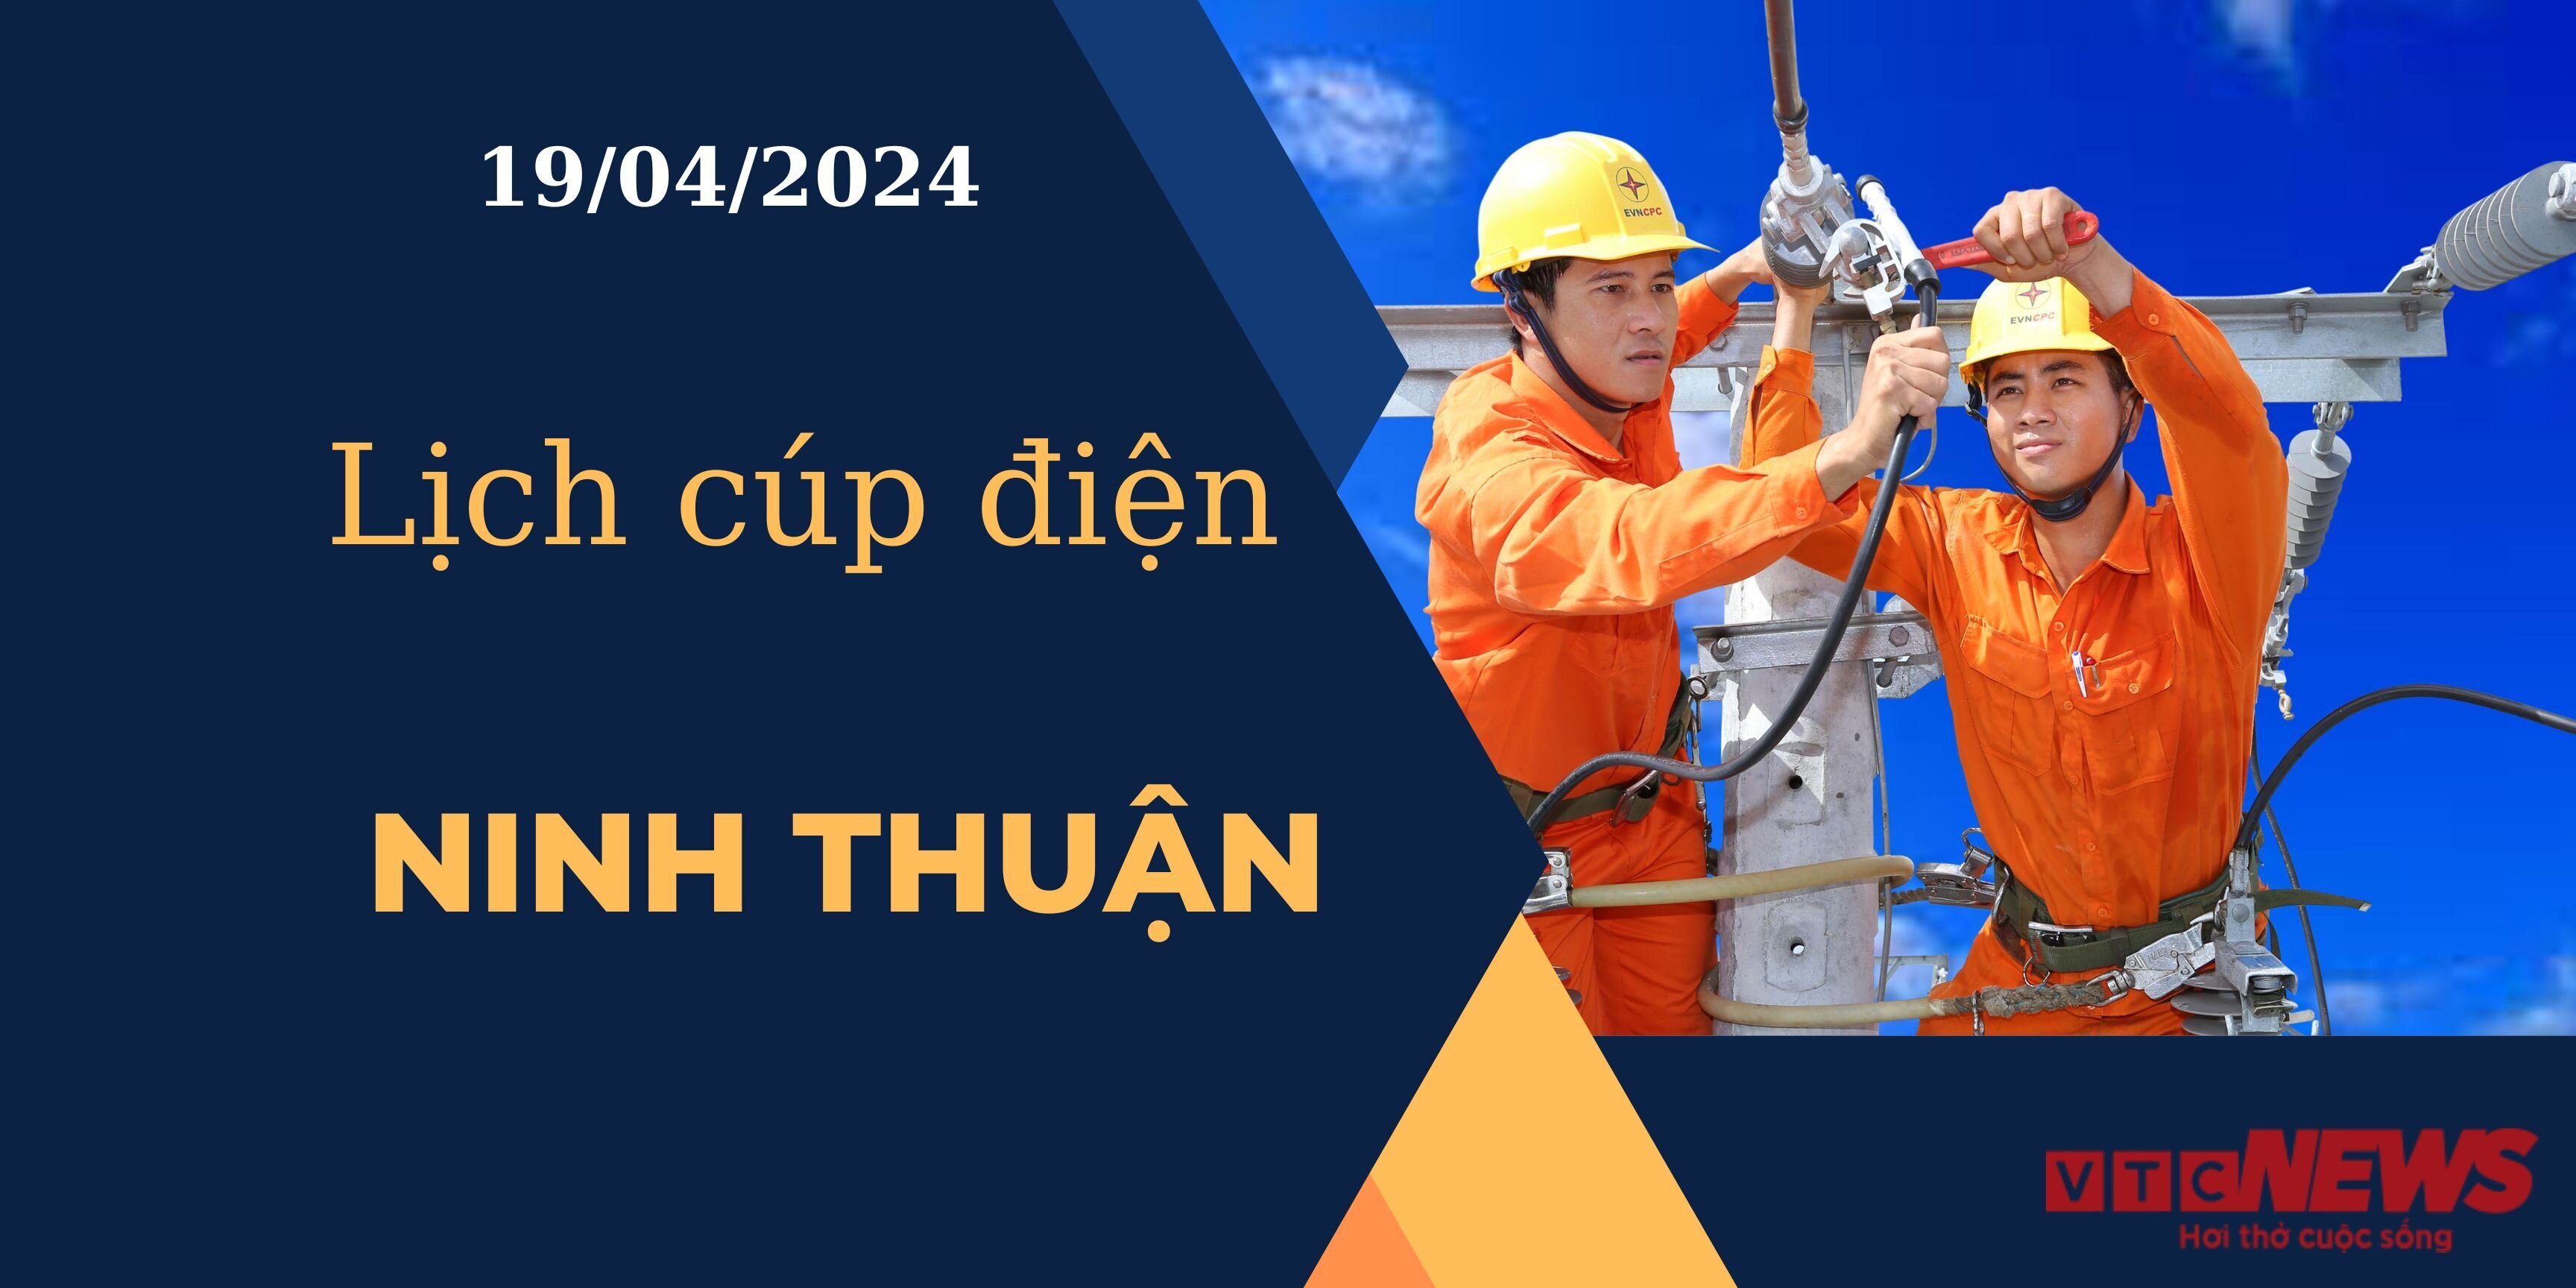 Lịch cúp điện hôm nay ngày 19/04/2024 tại Ninh Thuận